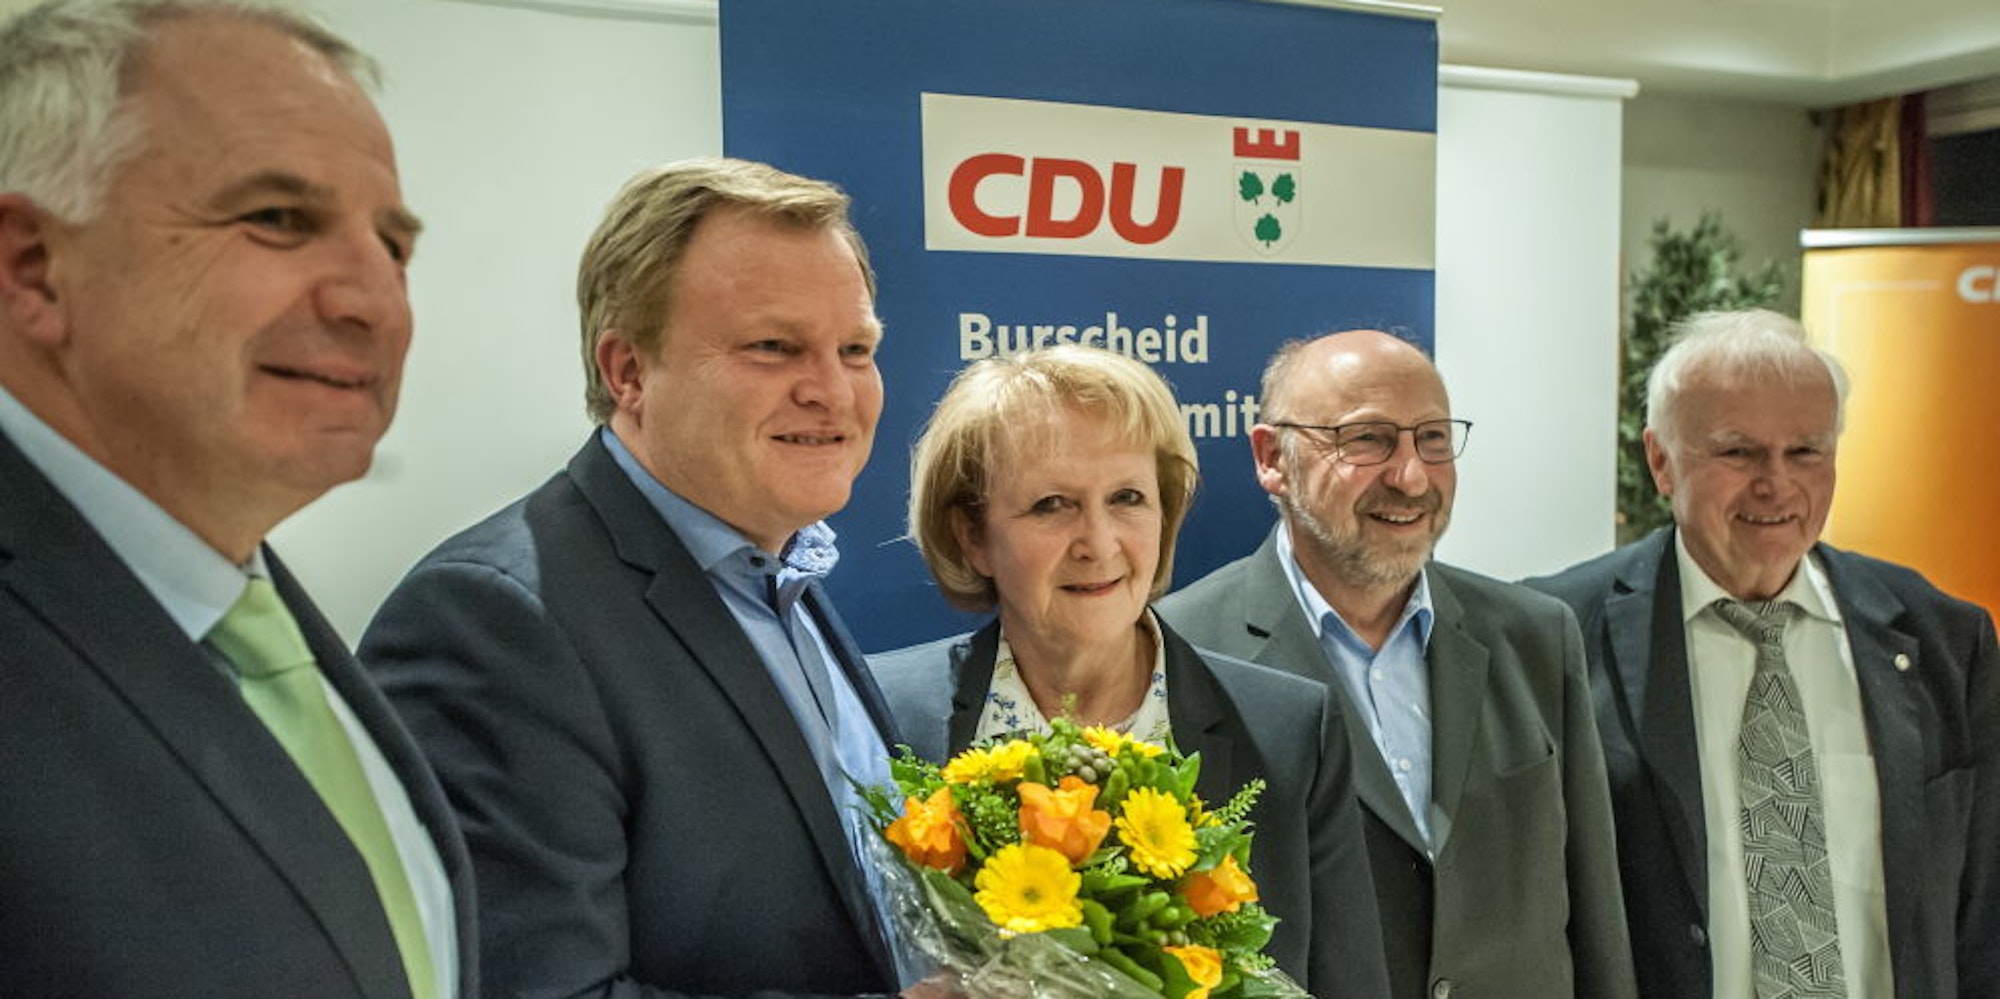 Stefan Caplan (mit Blumenstrauß) soll als CDU-Bewerber eine dritte Amtszeit als Burscheider Bürgermeister bekommen.